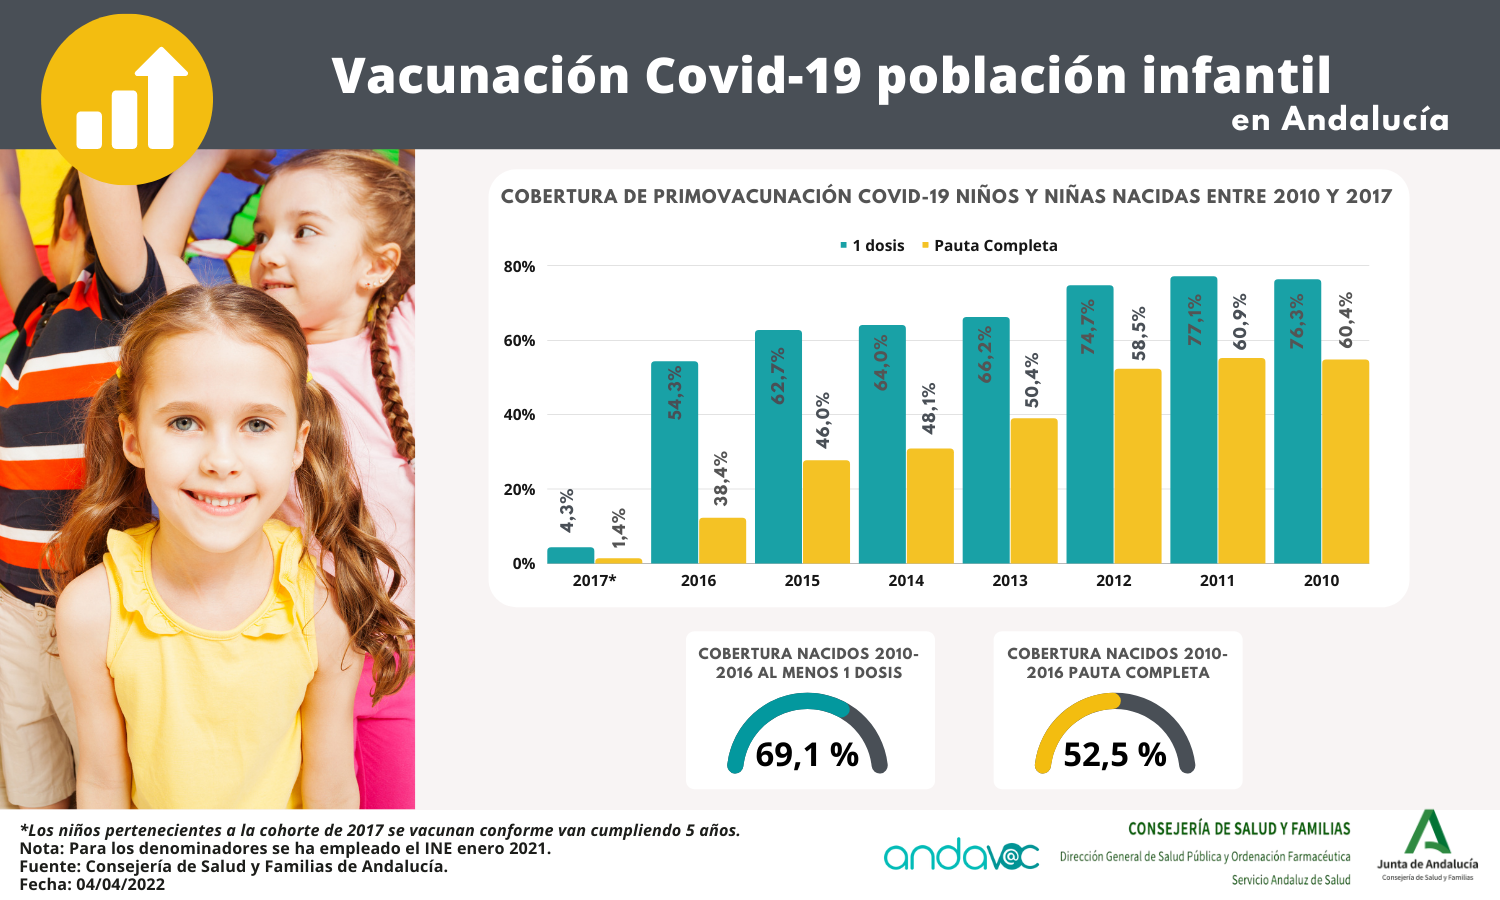 Vacunación Covid-19 en niños de 5 a 11 años en Andalucía